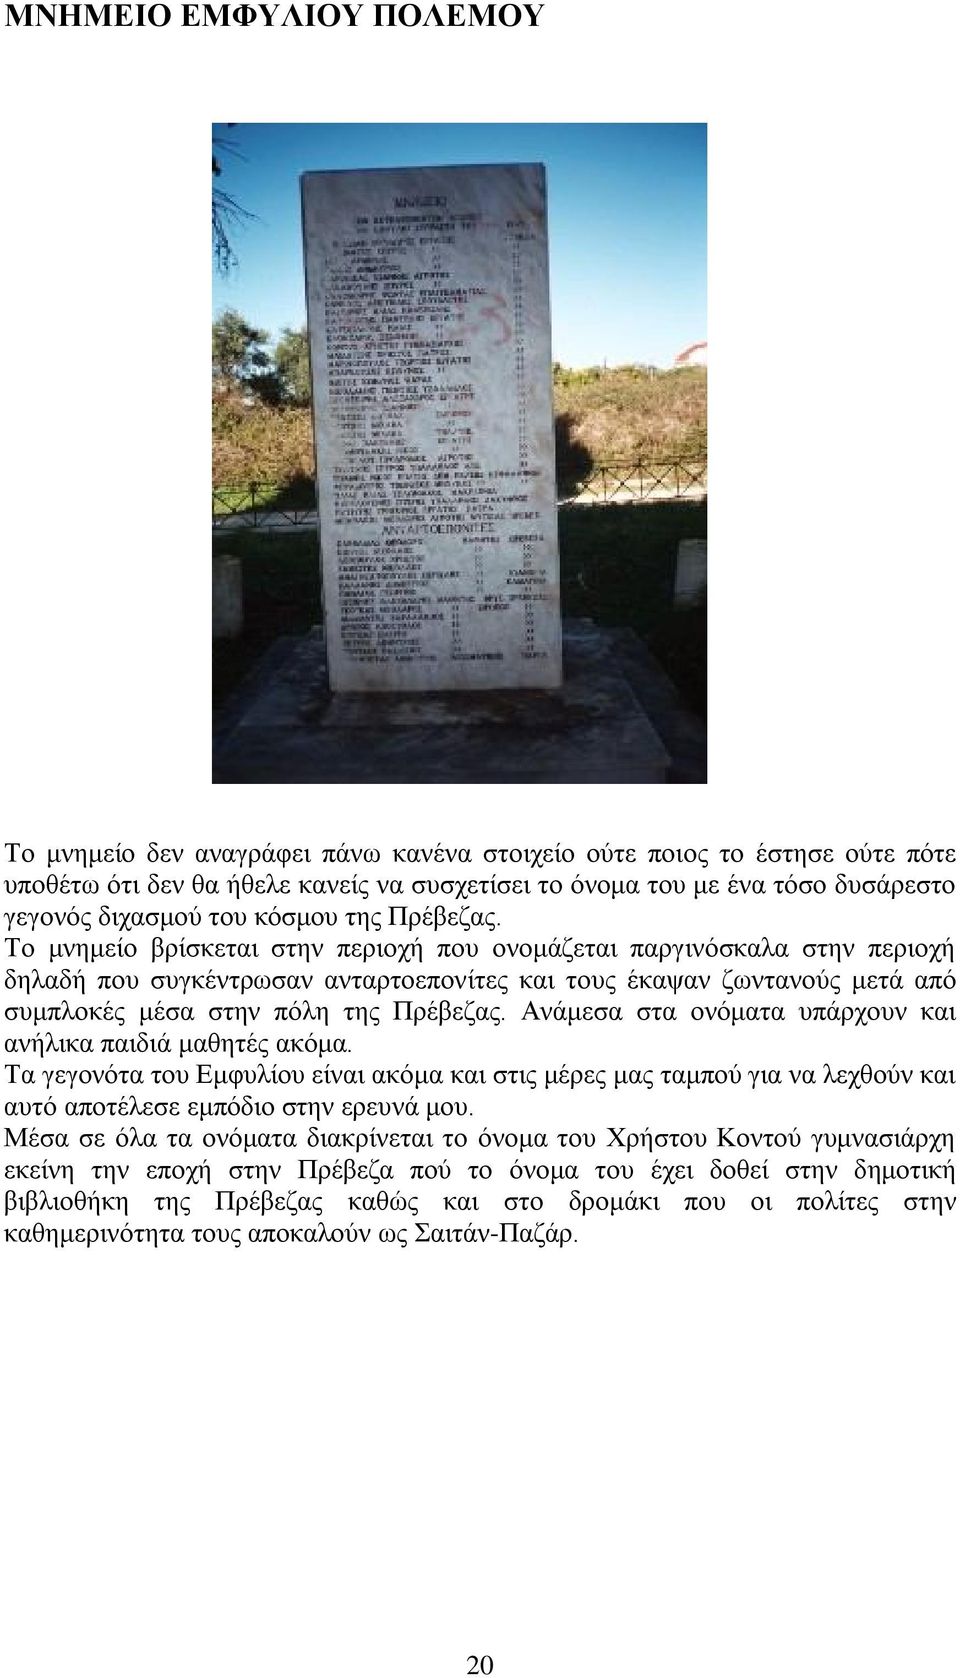 Το μνημείο βρίσκεται στην περιοχή που ονομάζεται παργινόσκαλα στην περιοχή δηλαδή που συγκέντρωσαν ανταρτοεπονίτες και τους έκαψαν ζωντανούς μετά από συμπλοκές μέσα στην πόλη της Πρέβεζας.